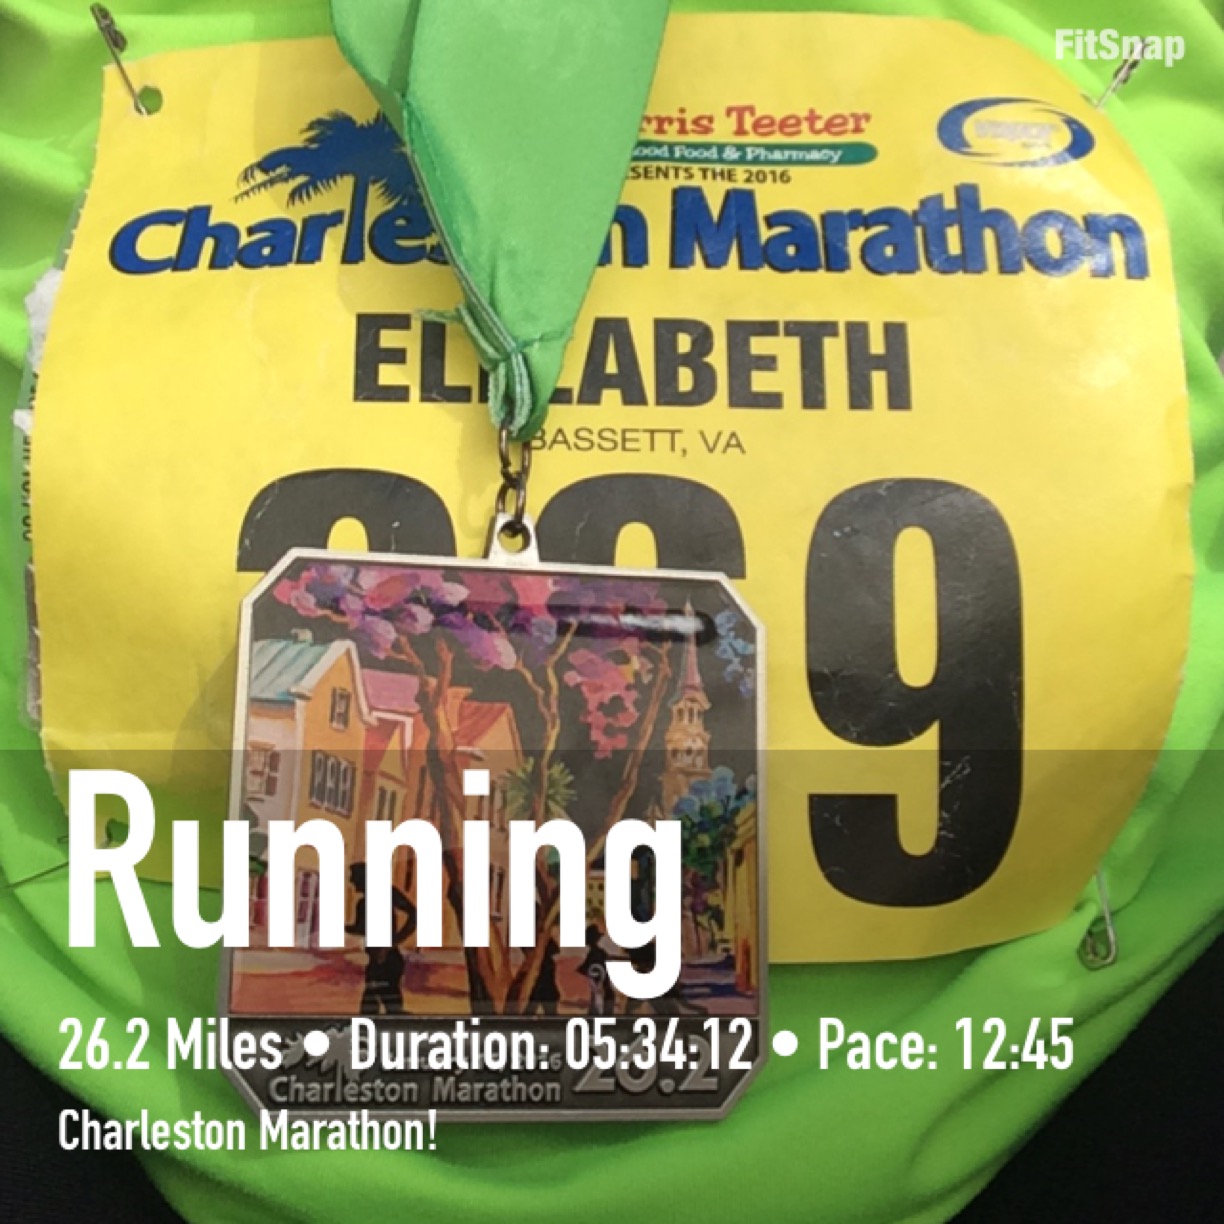 Update: Charleston Marathon Official Time